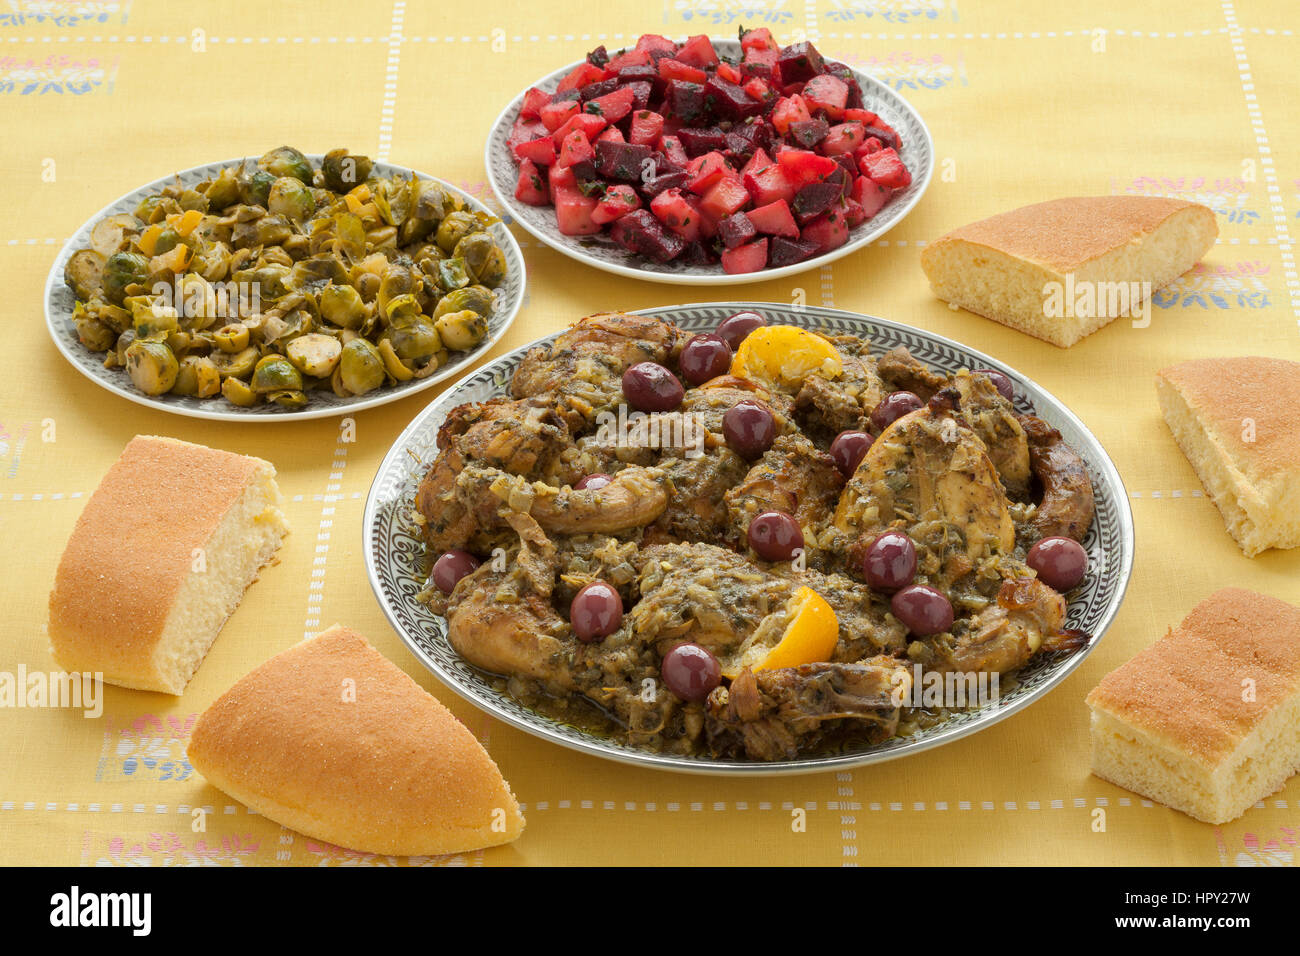 Repas marocain avec du poulet, choux de Bruxelles, salade et du pain Banque D'Images